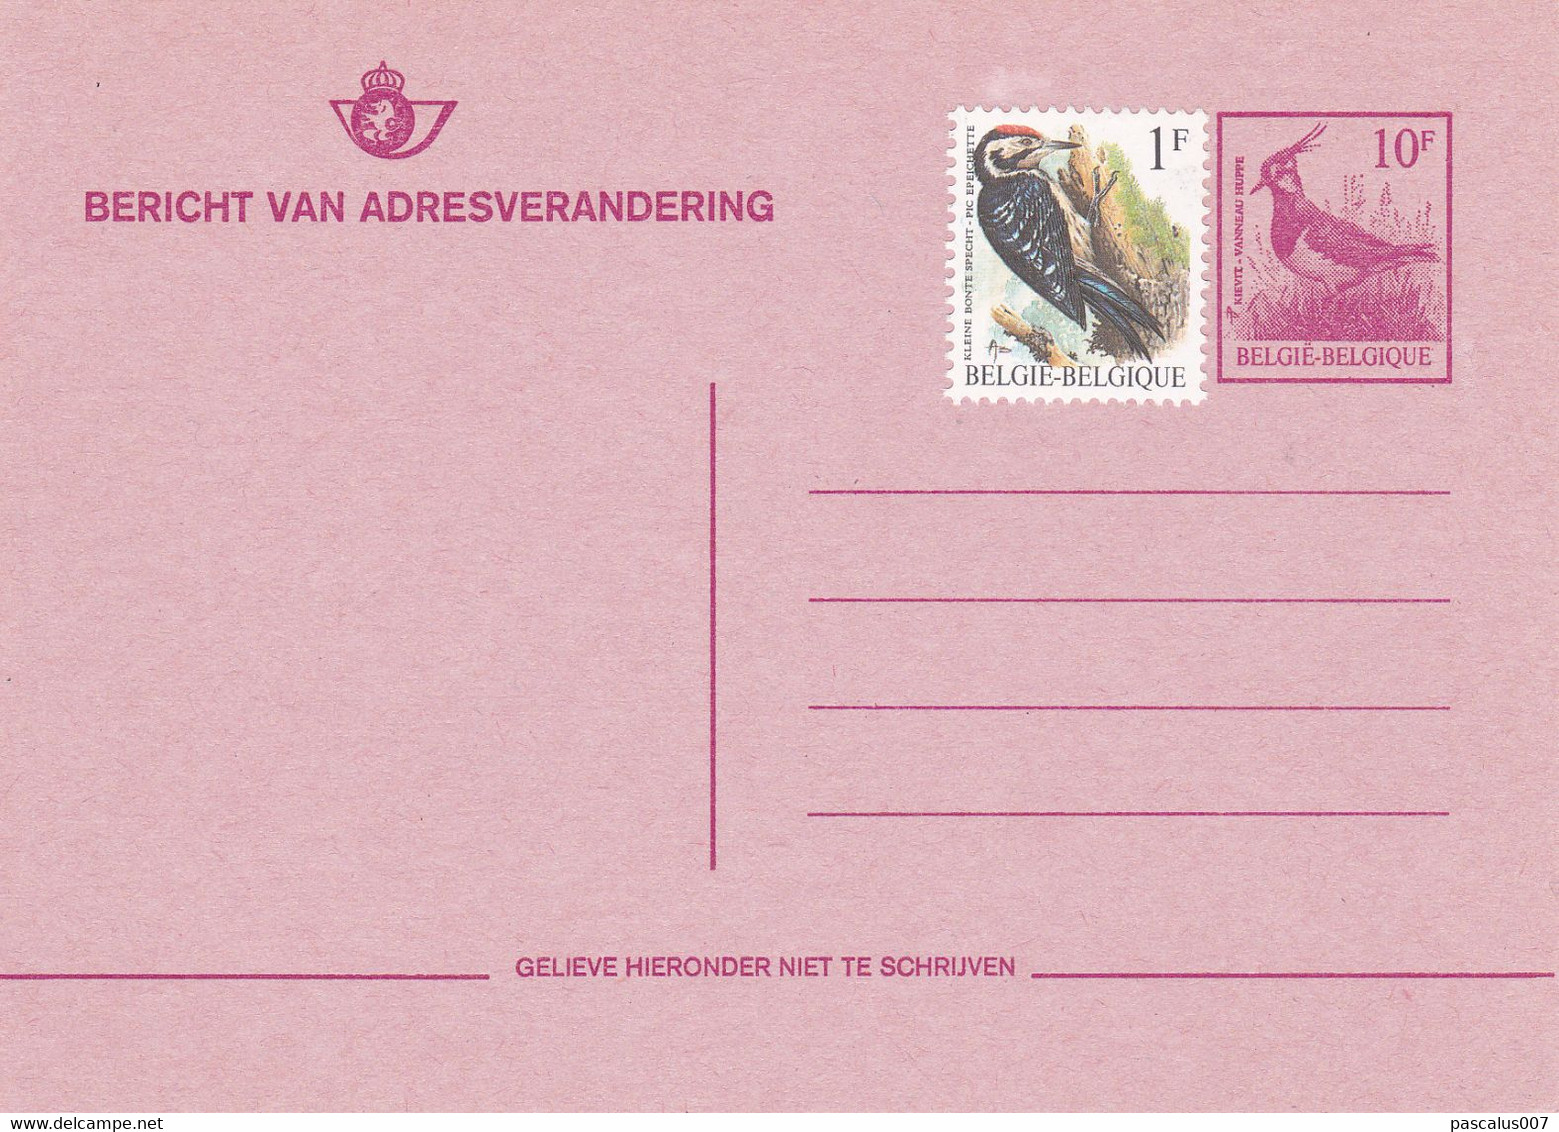 B01-396 Belgique CEP 27 N - Carte Entier Postal  1984 - COB Vierge - Série Oiseau - Avis De Changement Adresse - Avviso Cambiamento Indirizzo